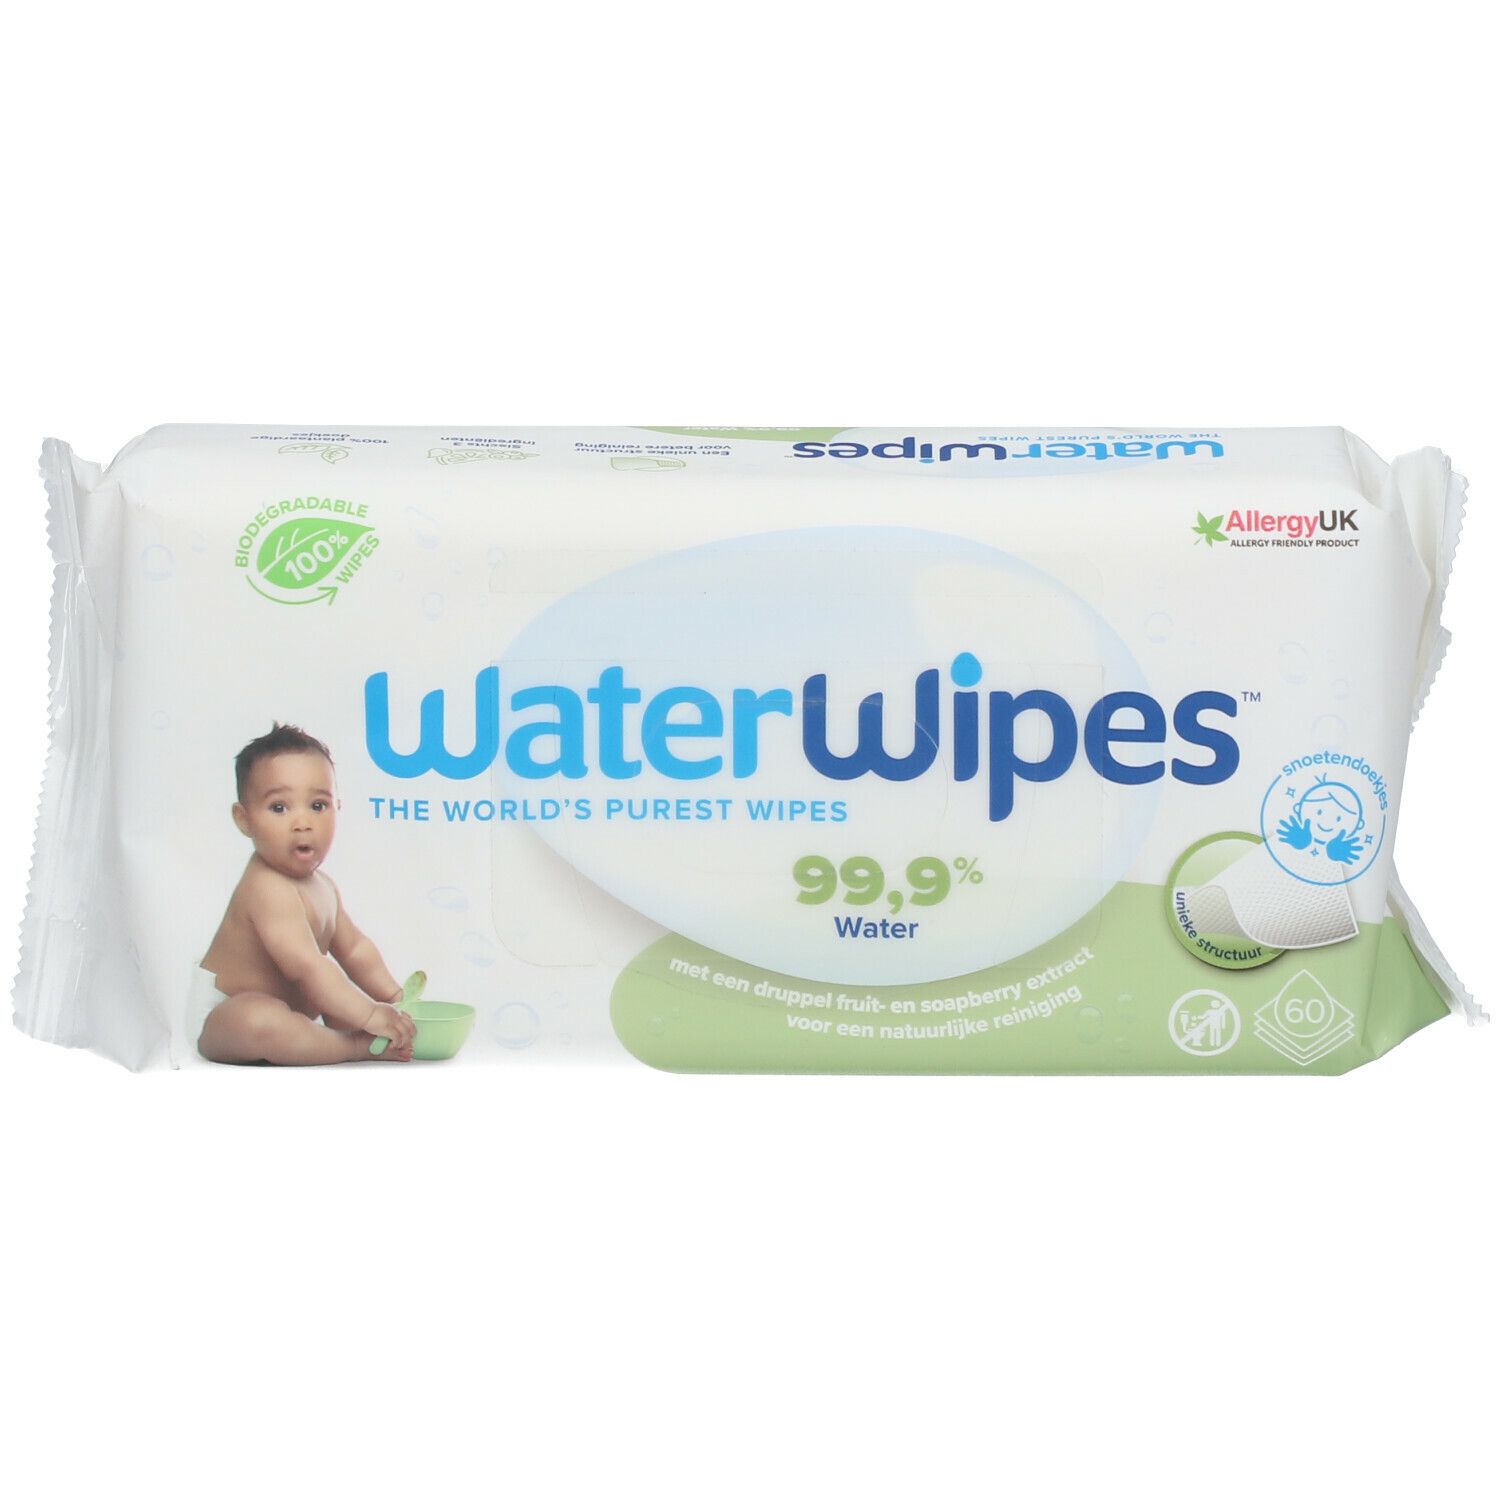 Lingettes pour bébés WaterWipes - 9x60 (540 lingettes pour les fesses)